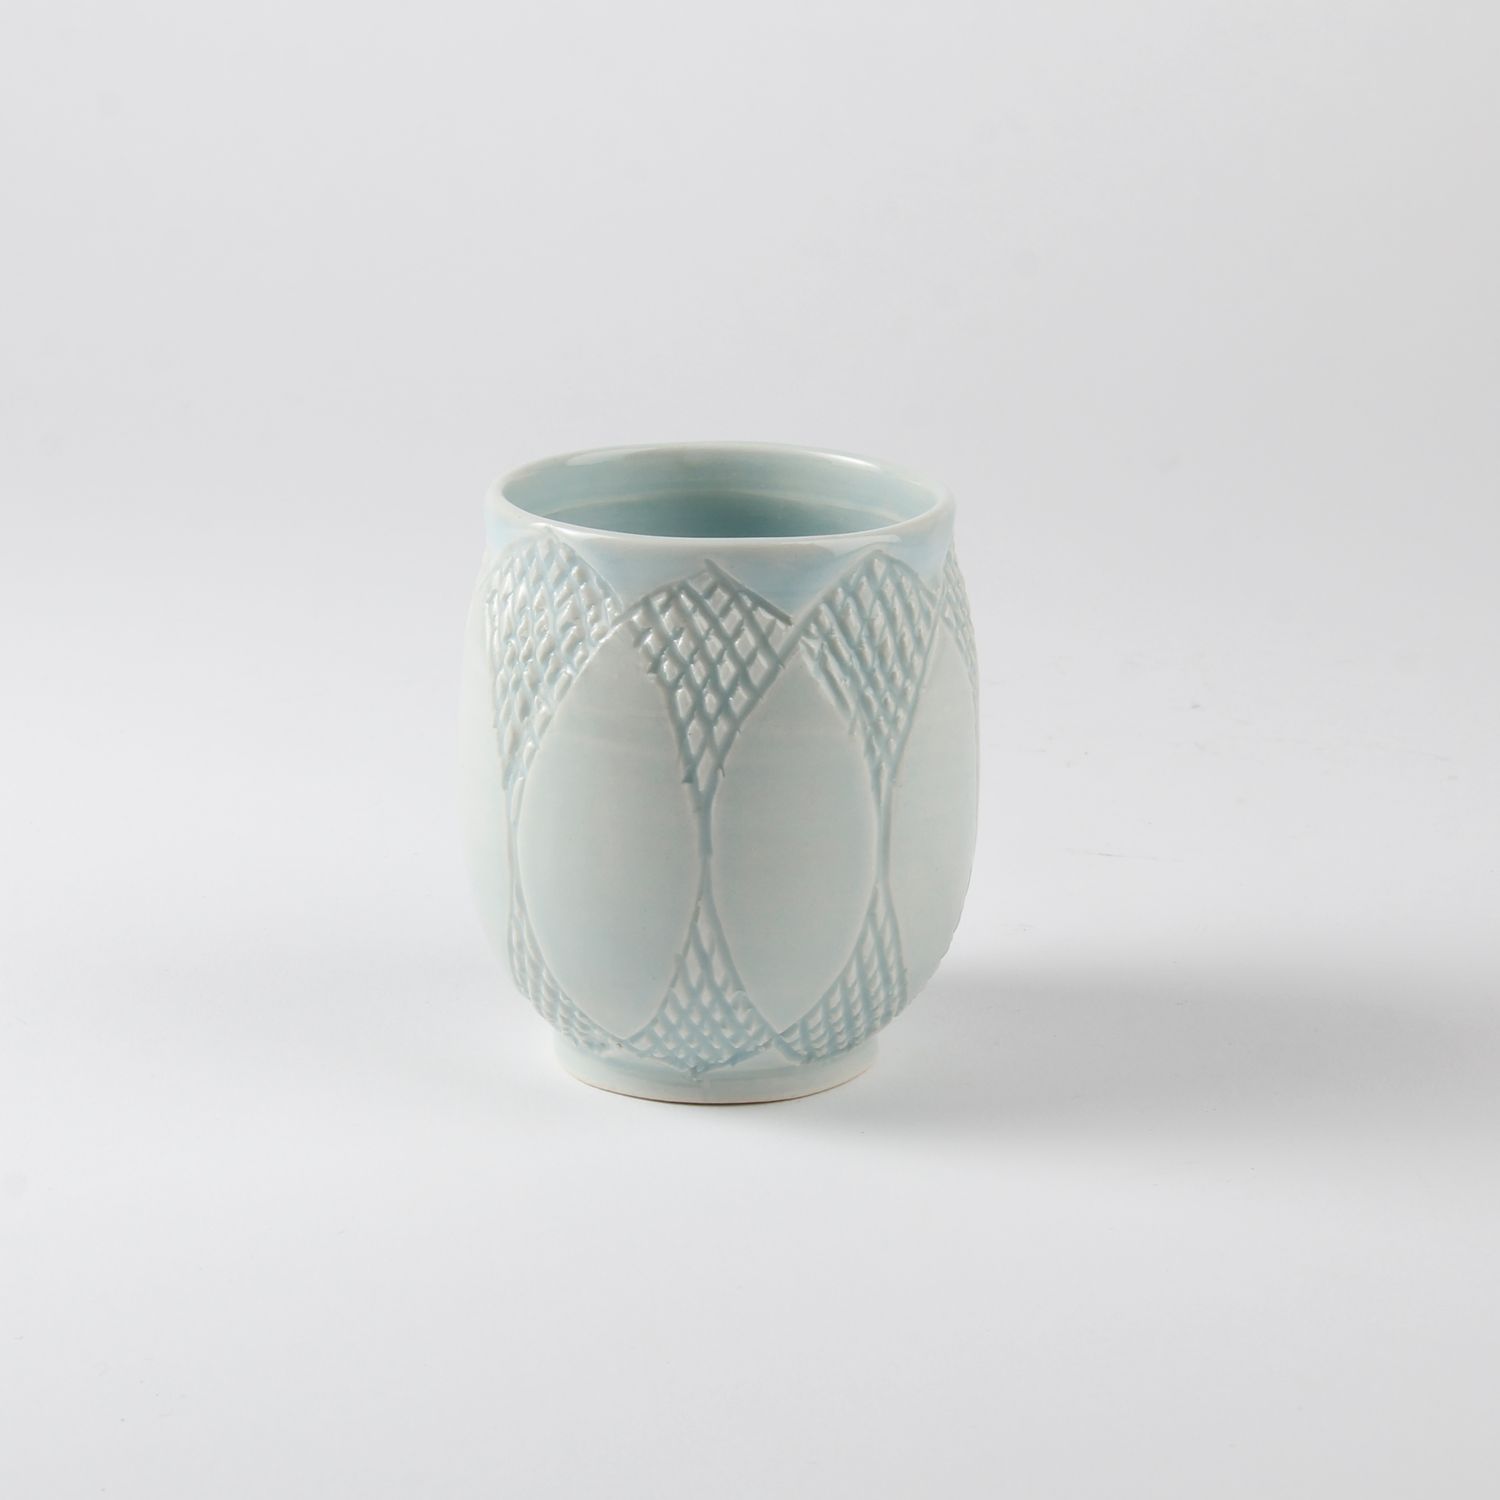 Arlene Kushnir: Carved Cup – Celadon Product Image 1 of 2